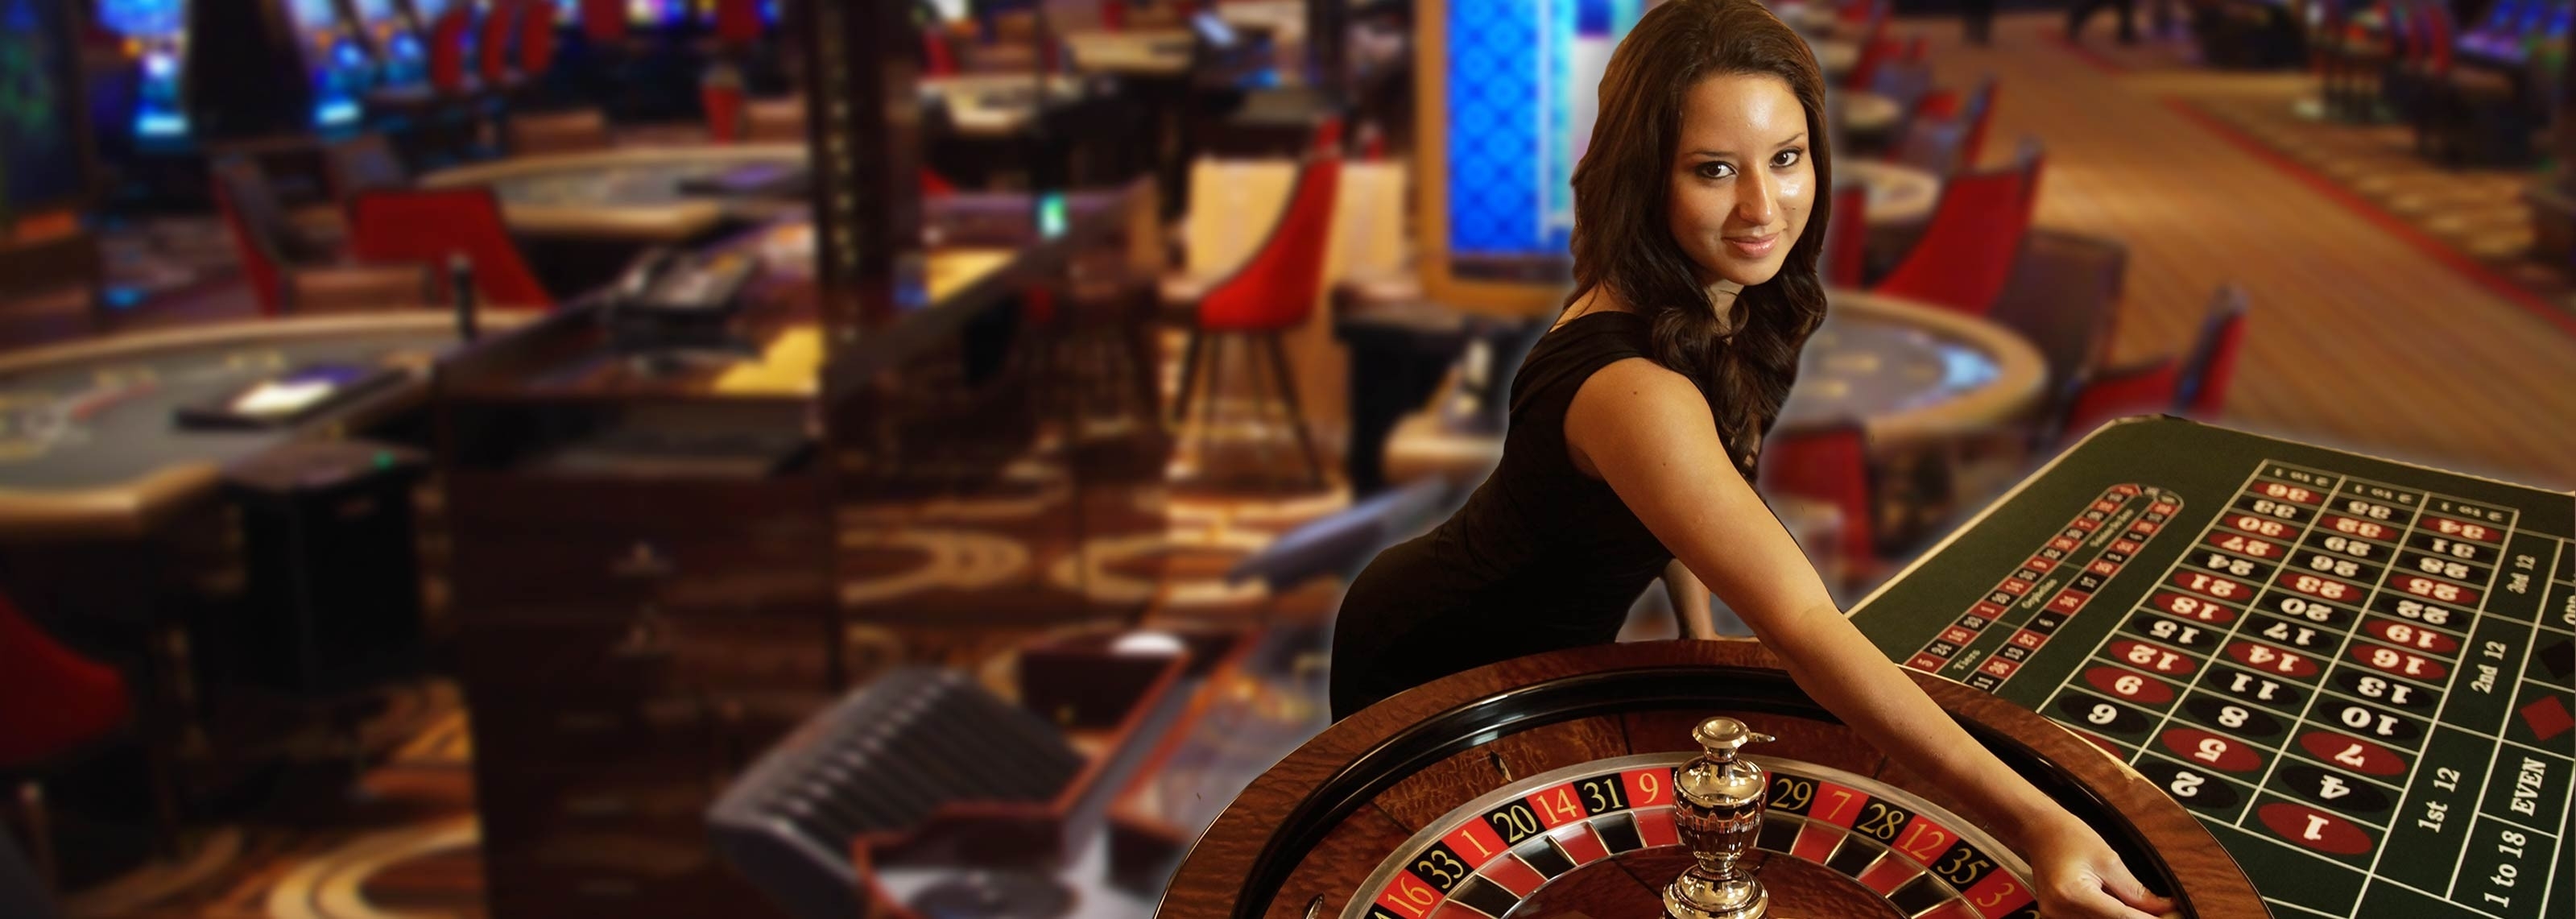 elena casino online com